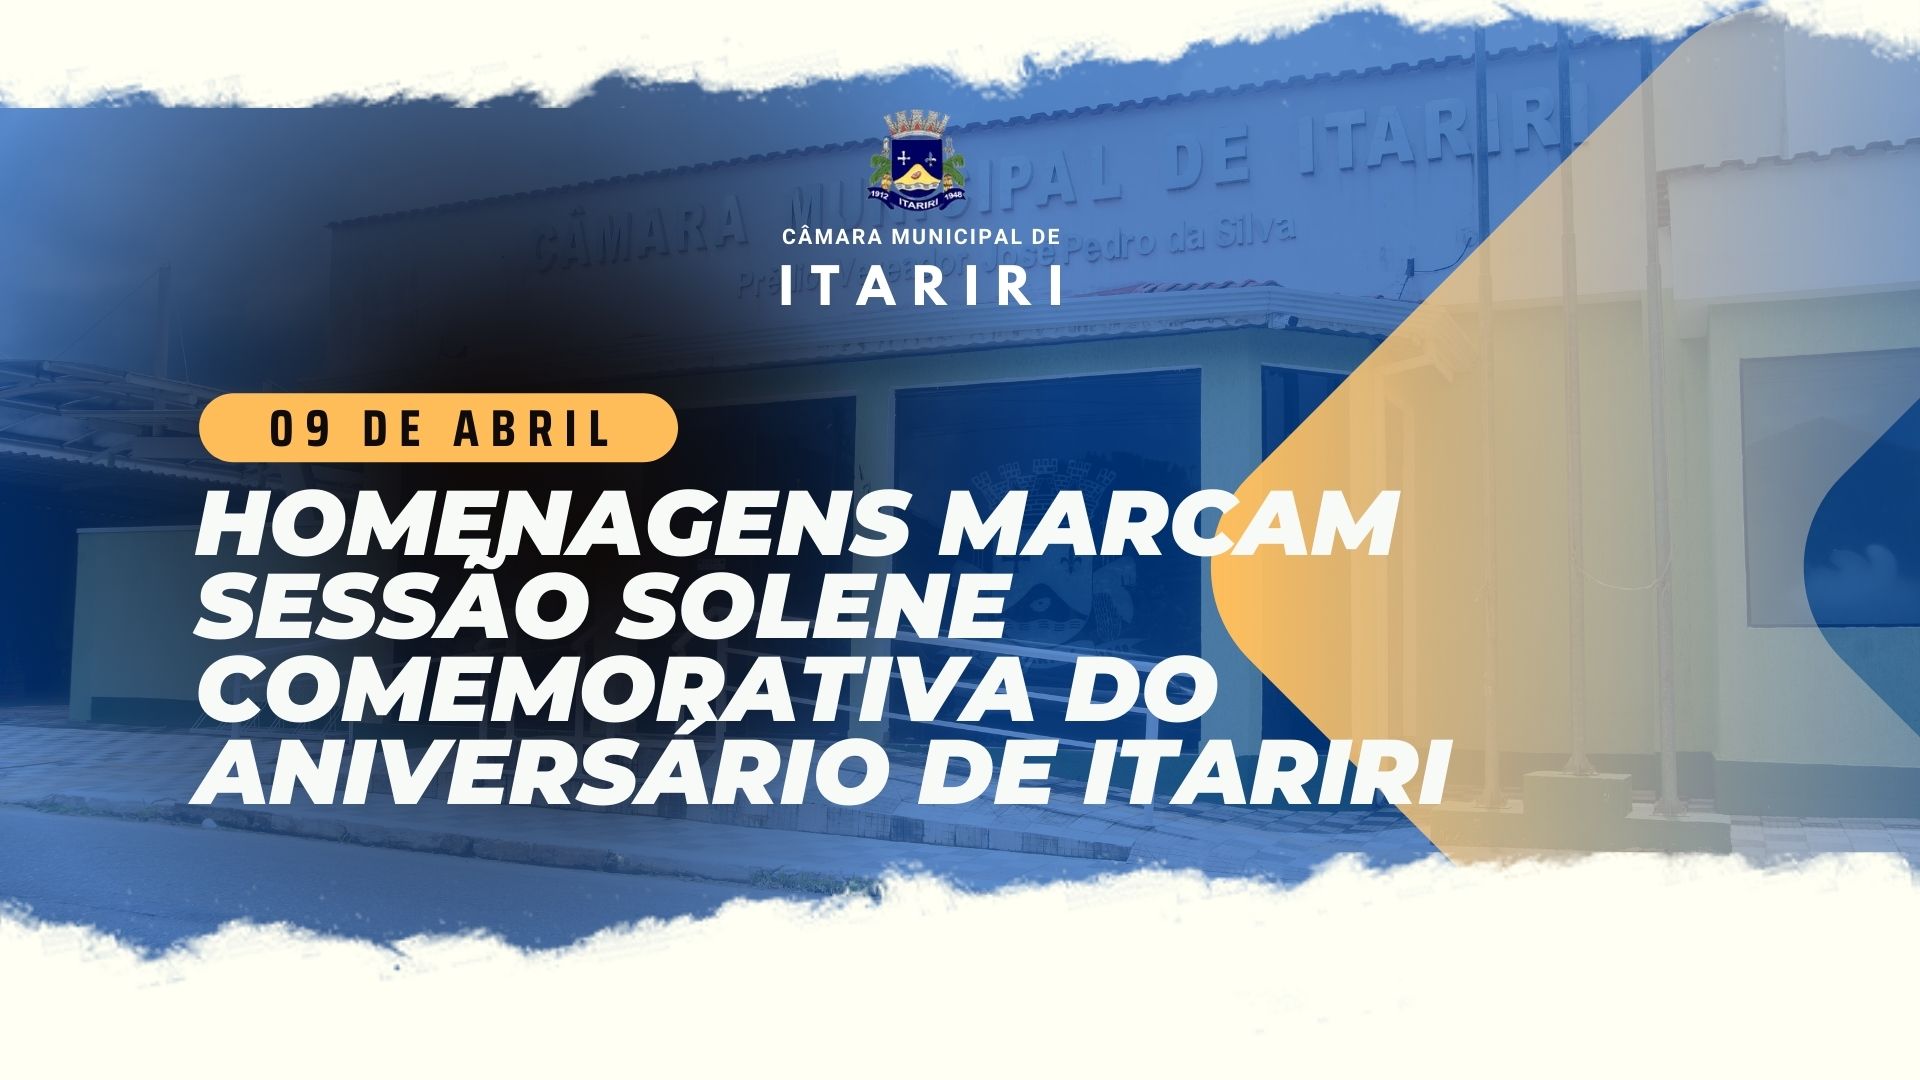 HOMENAGENS MARCAM SESSÃO SOLENE COMEMORATIVA DO ANIVERSÁRIO DE ITARIRI